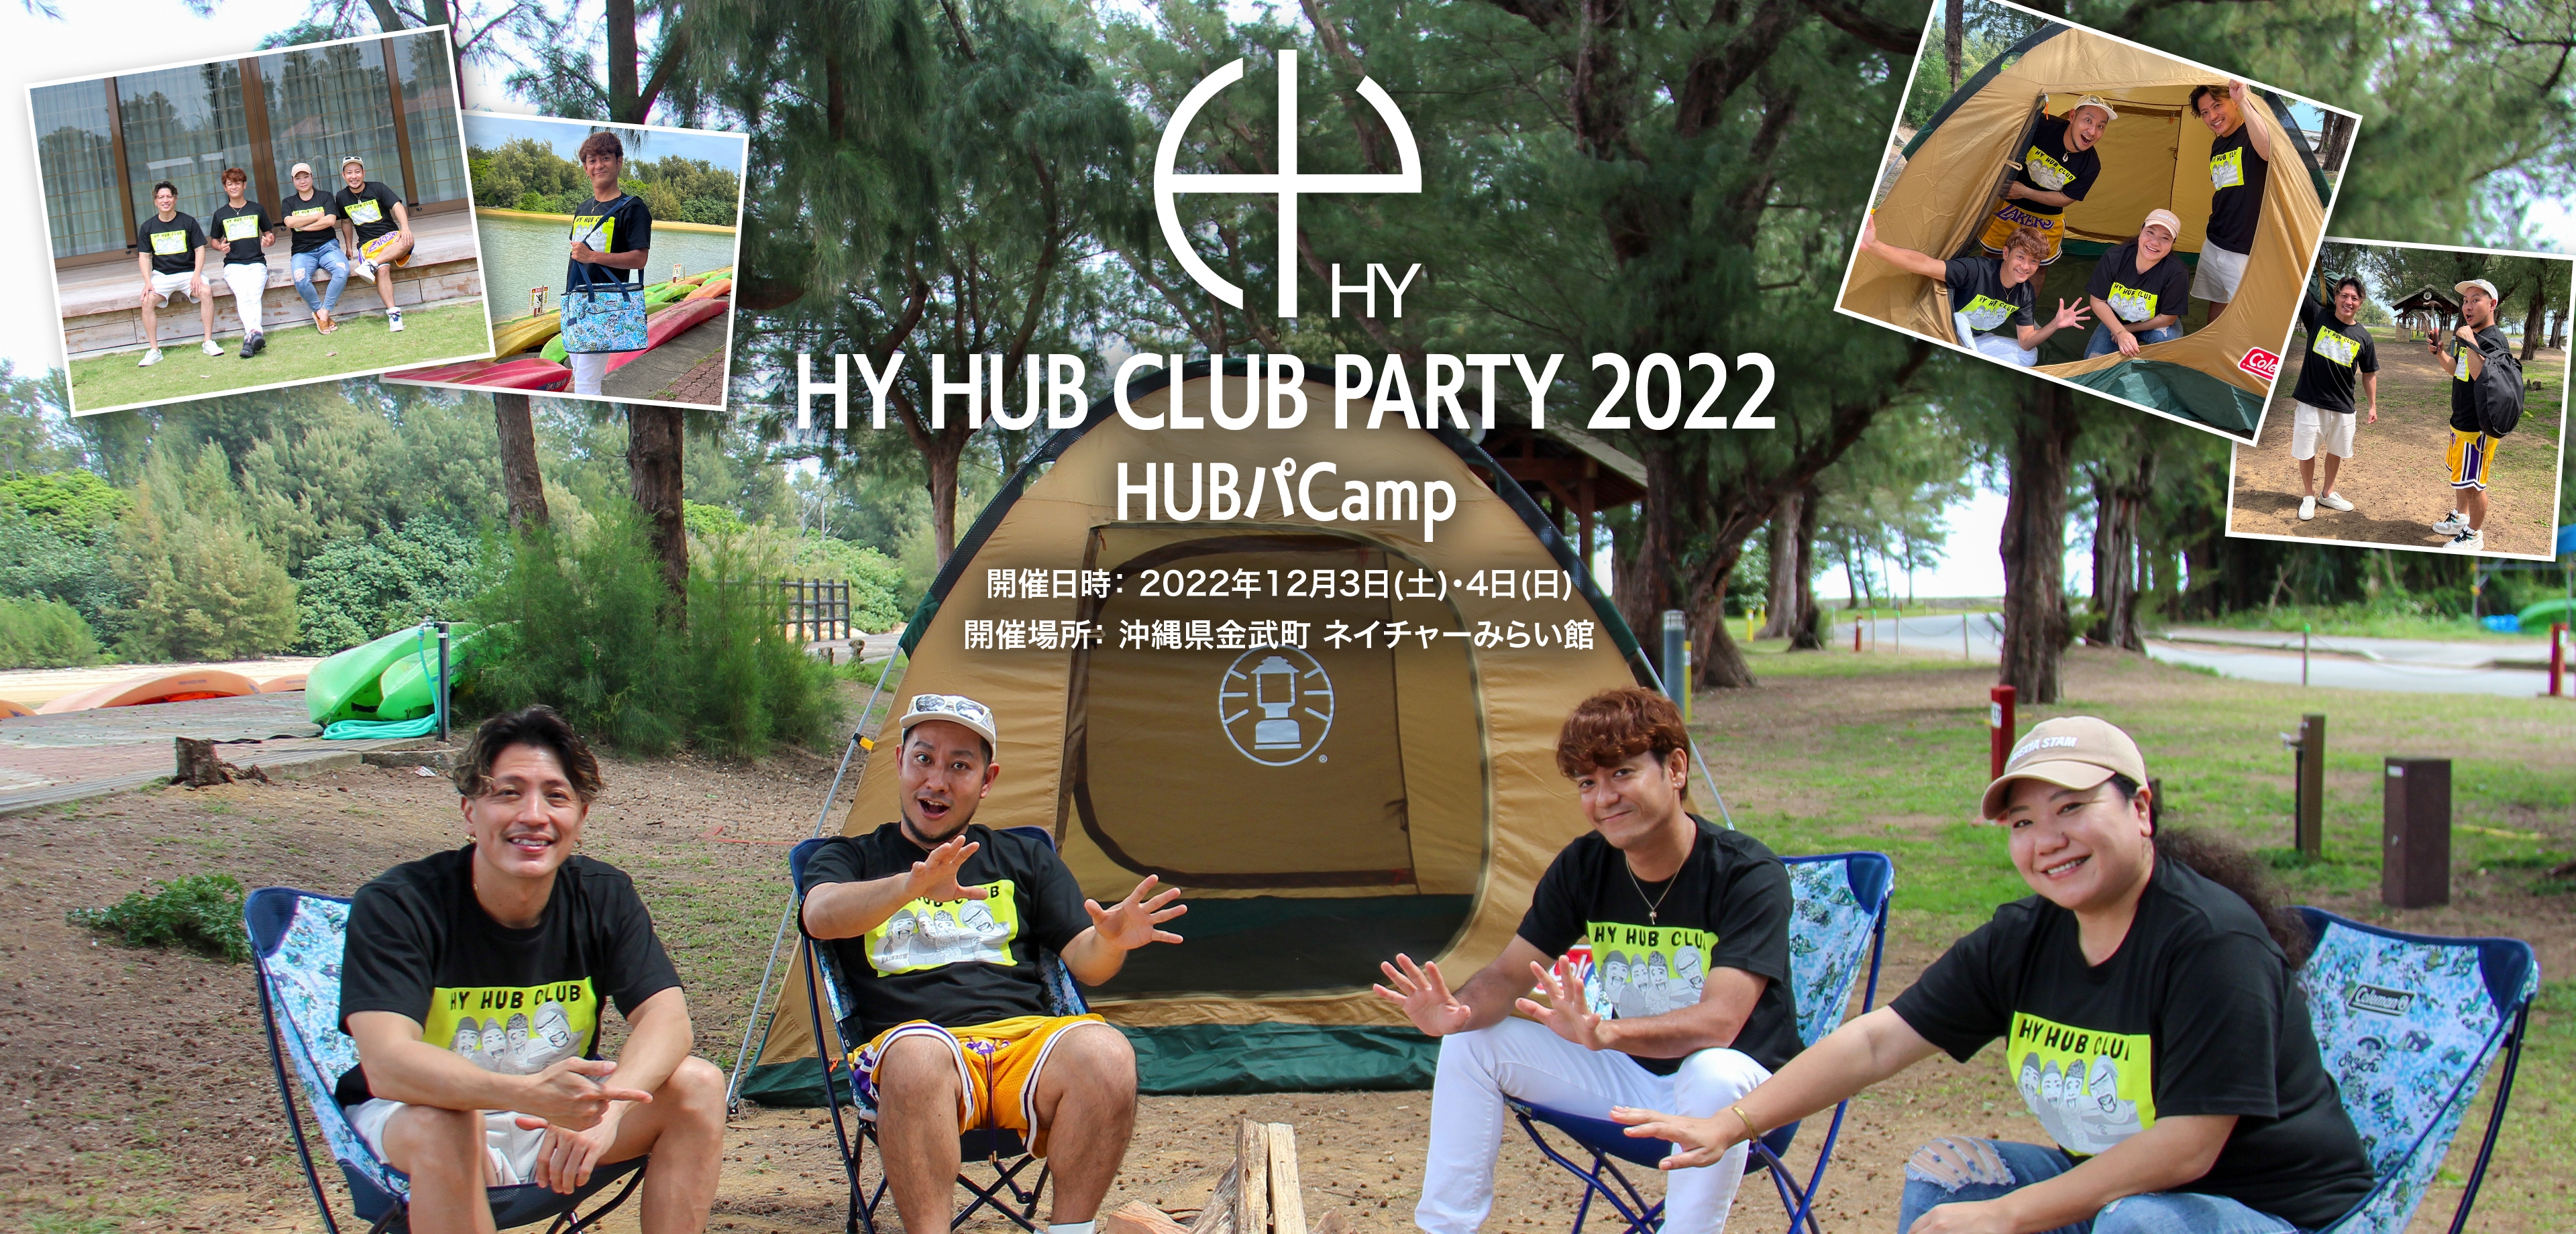 HY HUB CLUB PARTY 2022 HUBパCAMP